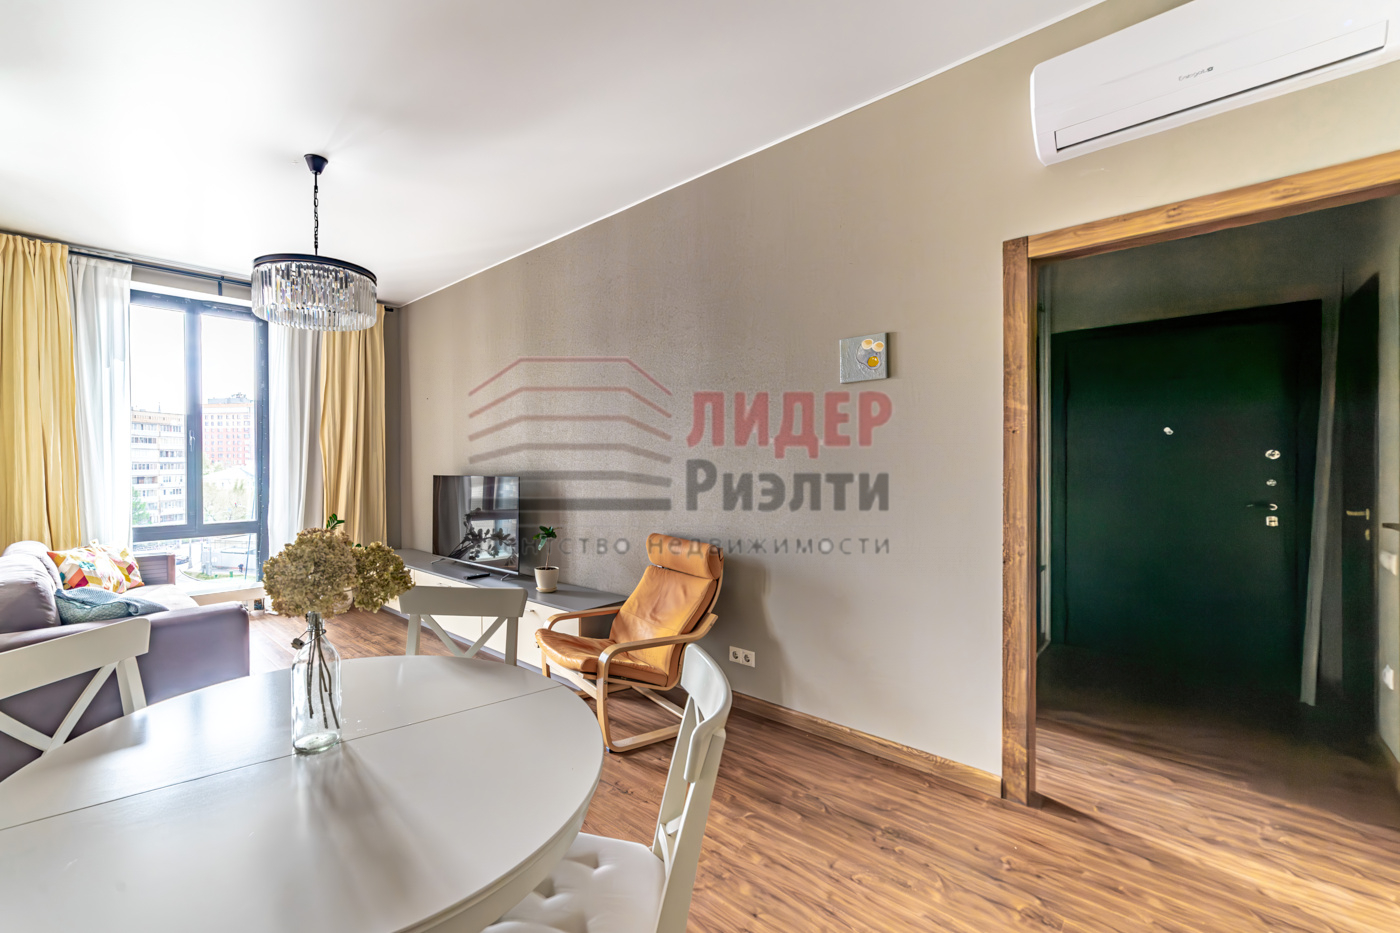 Продам квартиру в Москве по адресу Ходынская улица, 2, площадь 496 квм Недвижимость Москва (Россия)  Центр Зотов